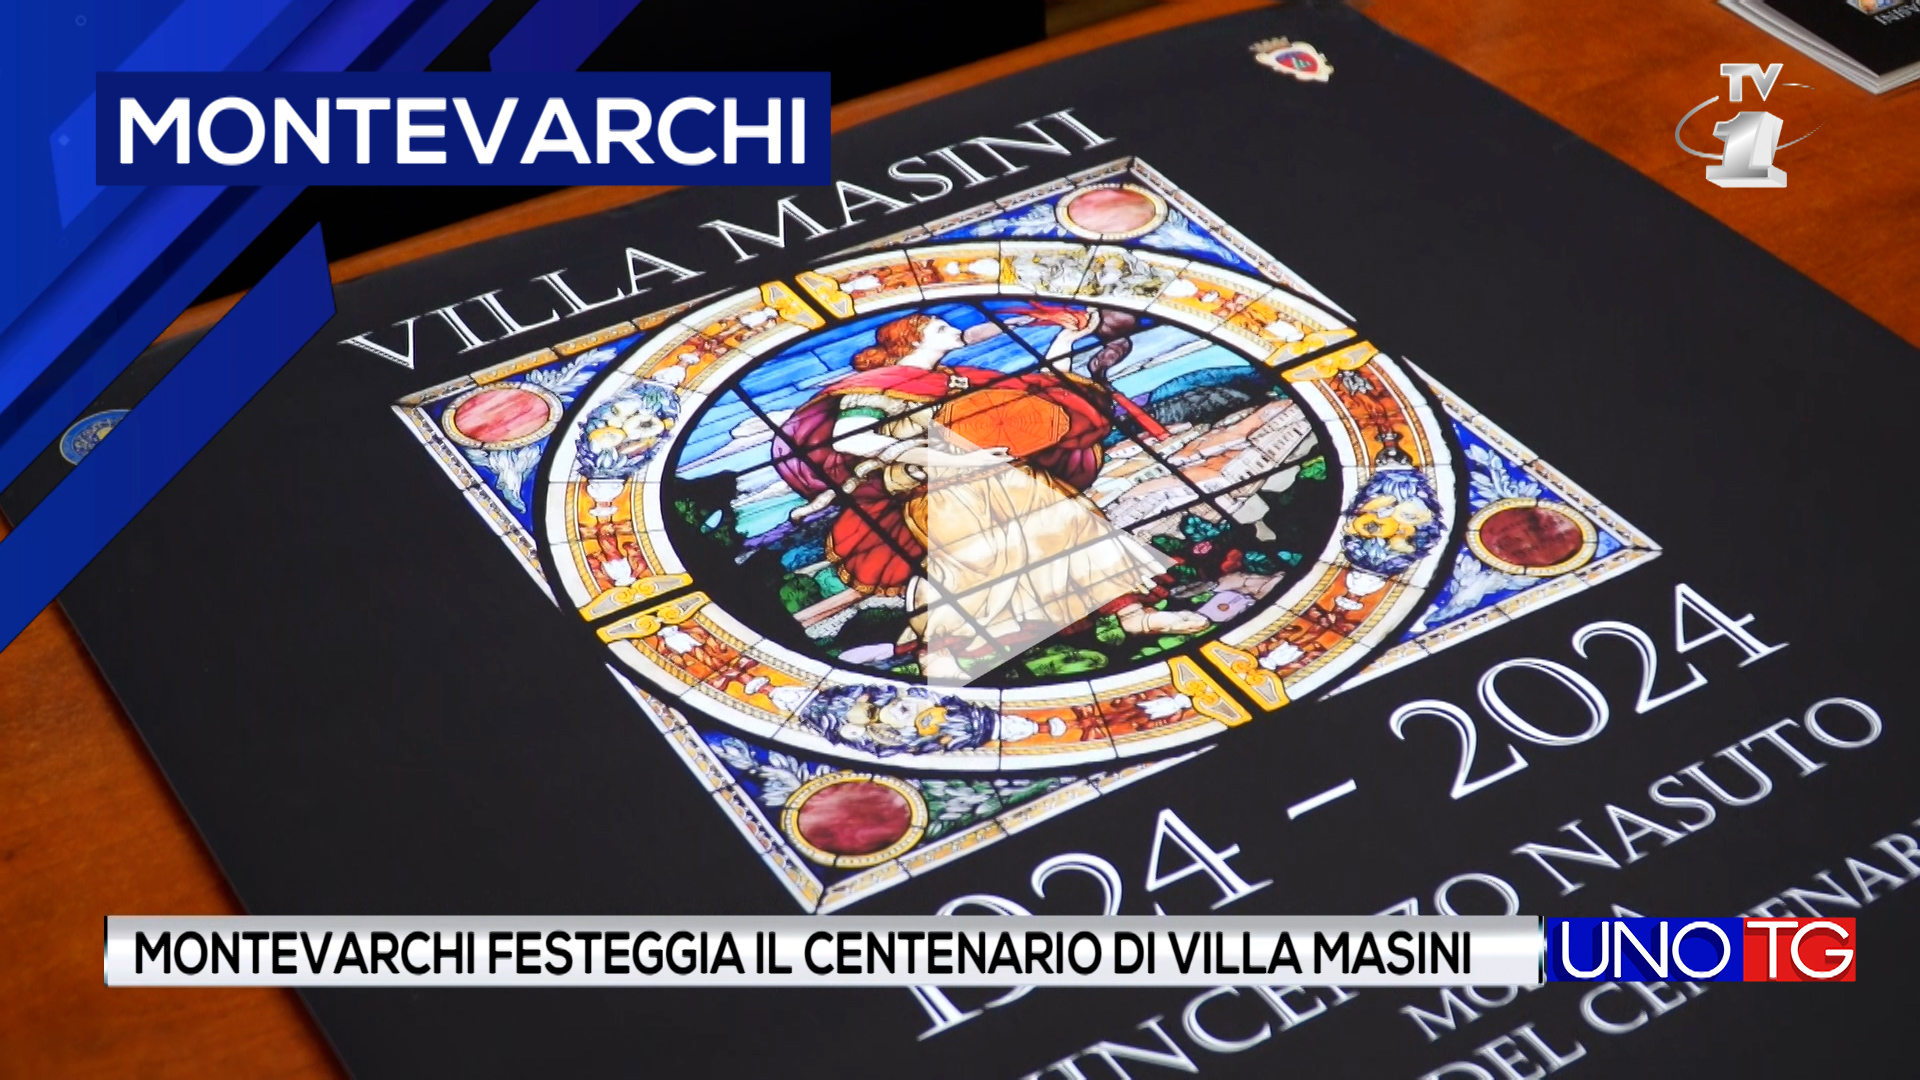 Montevarchi festeggia il centenario di Villa Masini